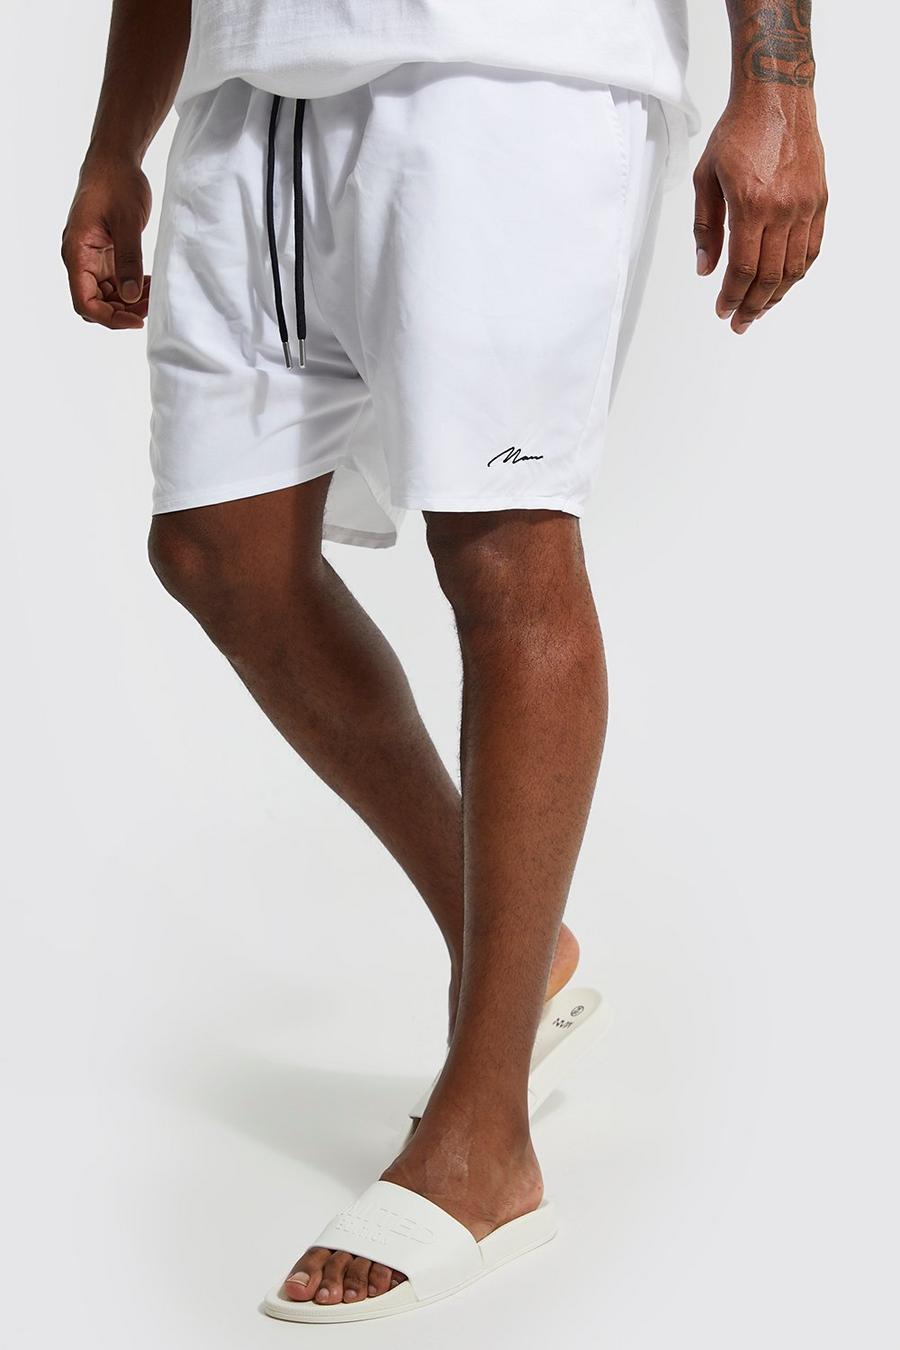 Costume a pantaloncino Plus Size in fibre riciclate con firma Man, White blanco